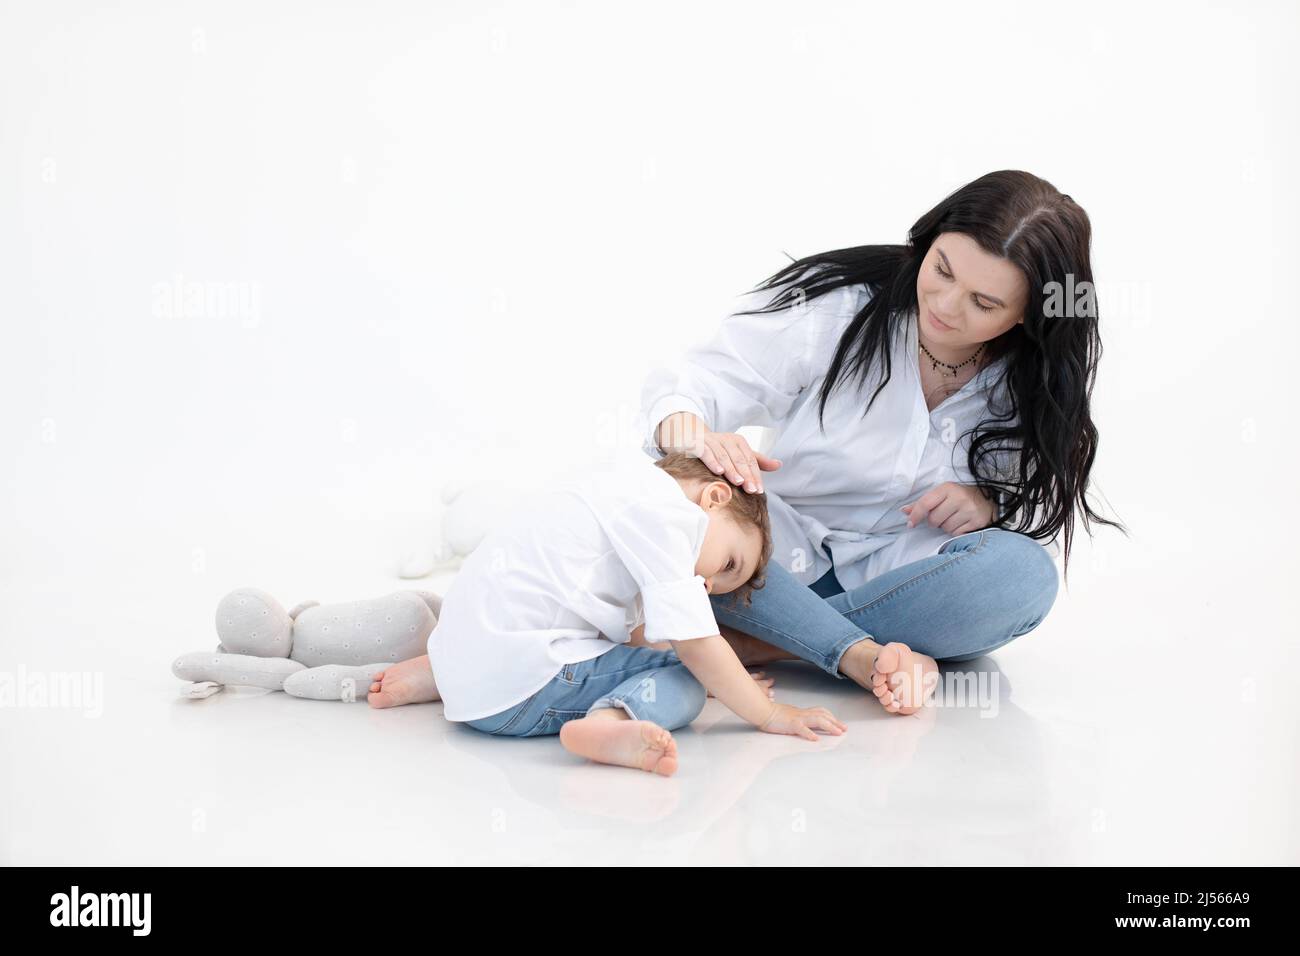 Frau und Junge sitzen zusammen auf dem Boden, weißer Hintergrund. Umarmen, Mutter kümmern. Autismus-Spektrum-Störung. Psychische Gesundheit Stockfoto